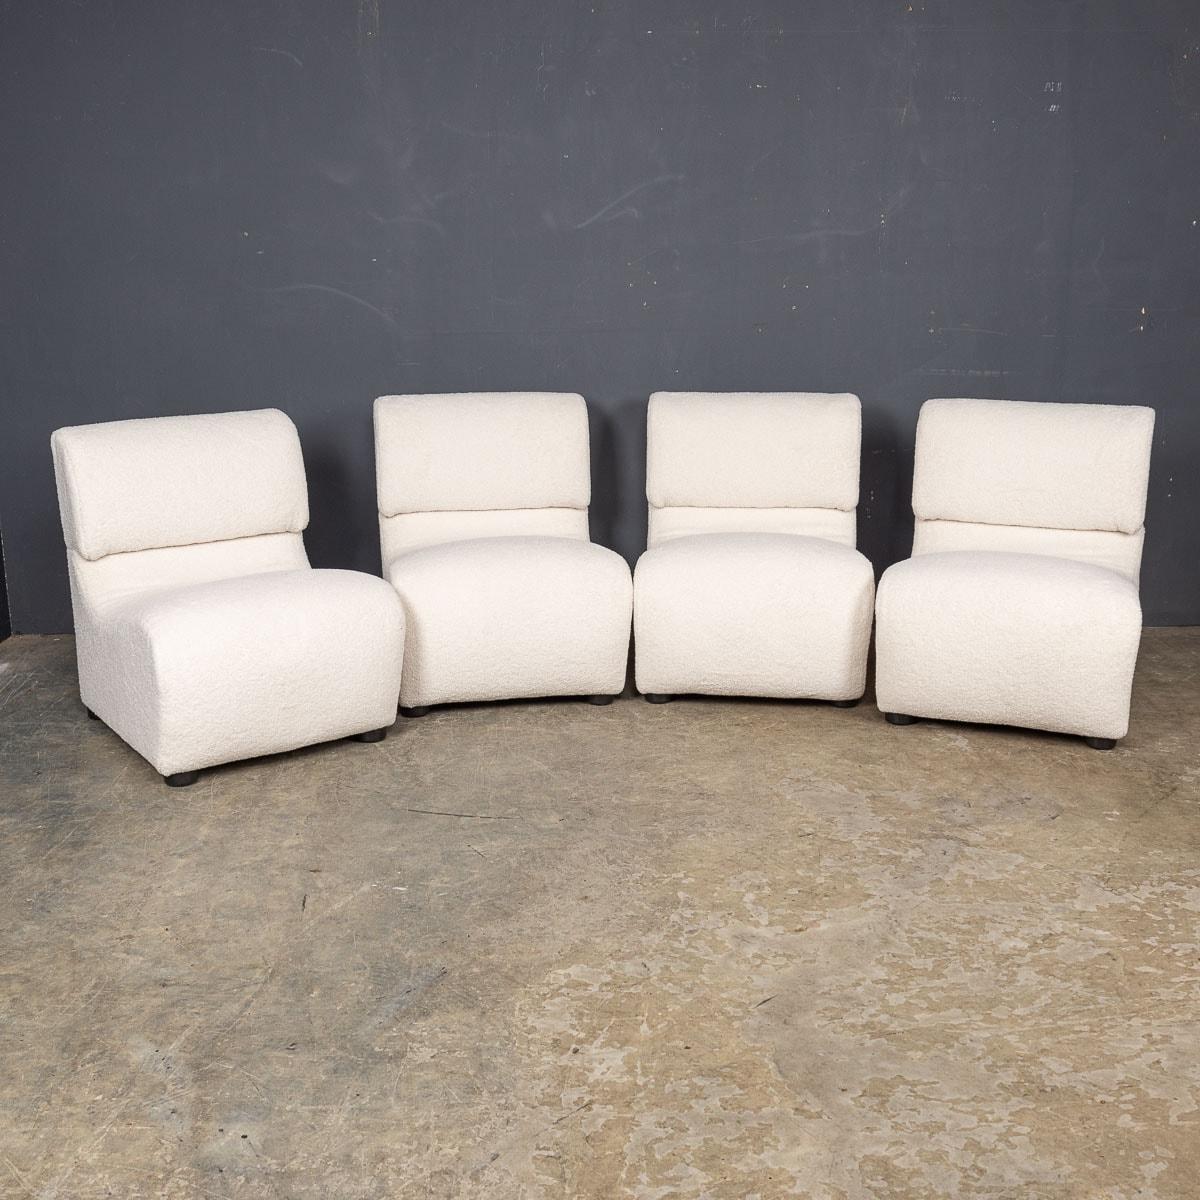 Ein Satz von vier italienischen Sesseln aus dem späten 20. Jahrhundert, exquisit neu gepolstert mit üppigem cremefarbenem Bouclé-Stoff, bietet eine perfekte Sitzlösung für einen Fernsehraum oder ein Heimkino.

CONDIT
In außergewöhnlichem Zustand.